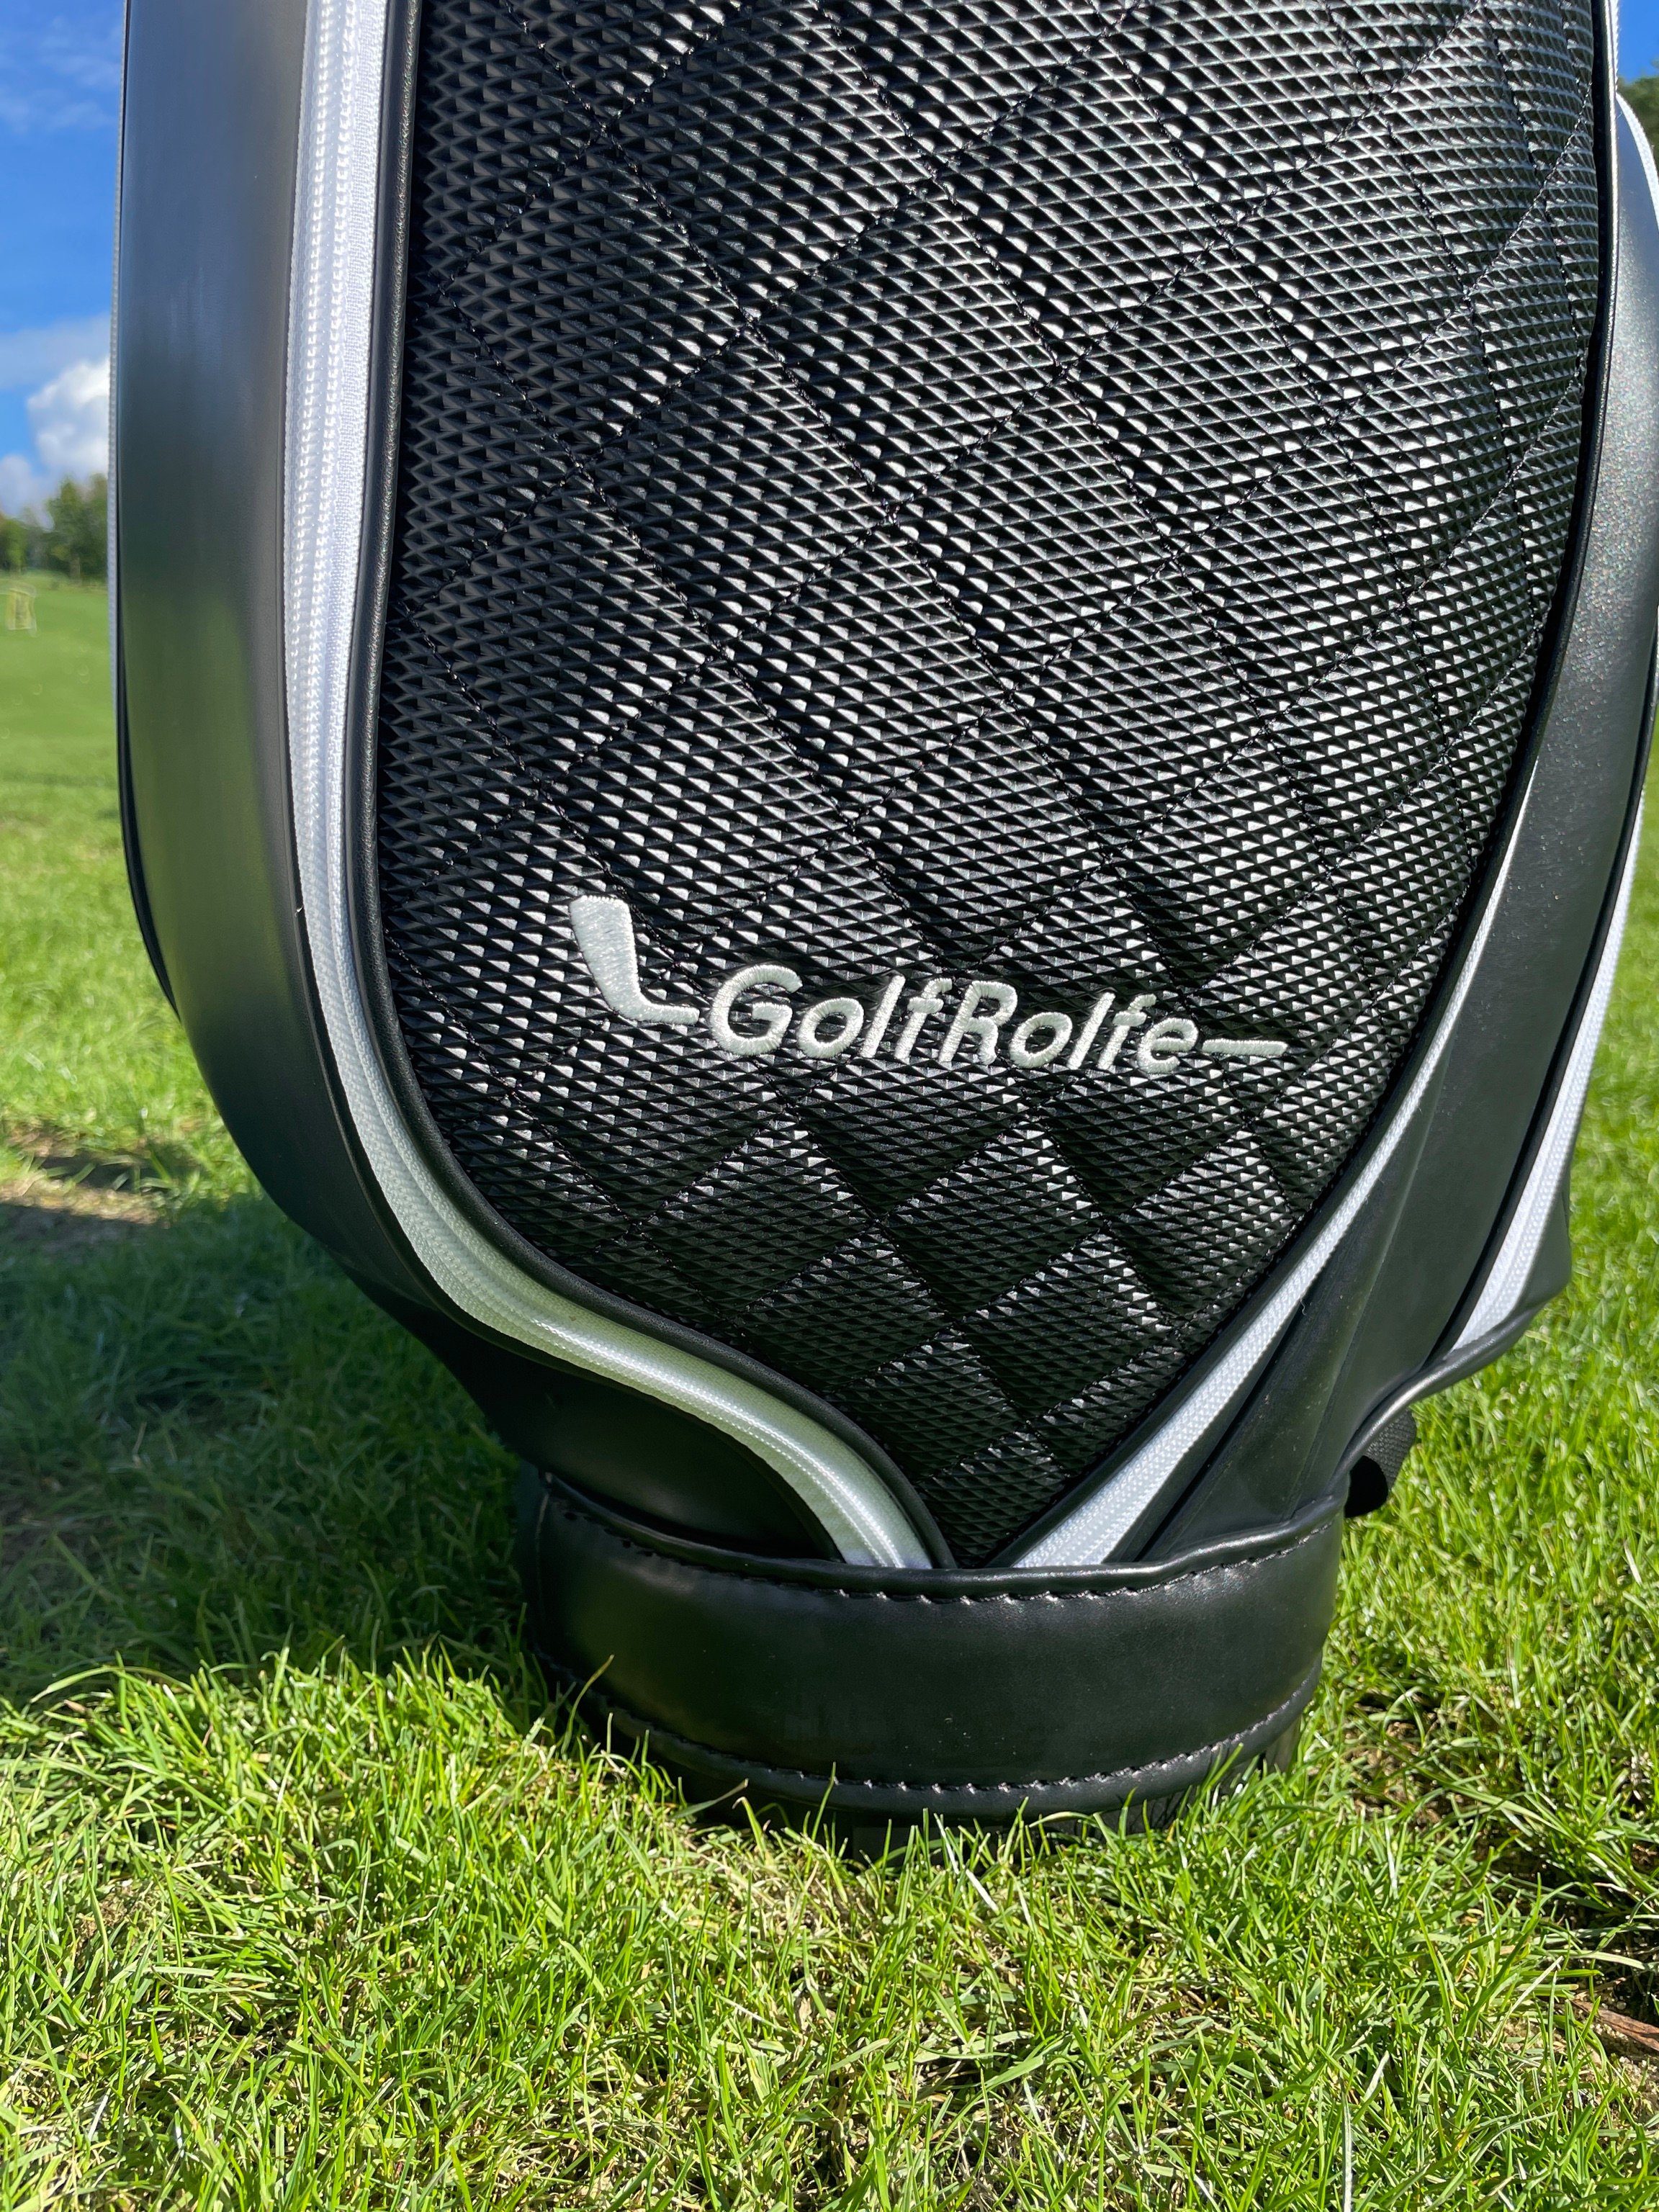 - Golfbag Caddybag Design GolfRolfe Golfballtasche Golftasche 14286 GolfRolfe schwarz